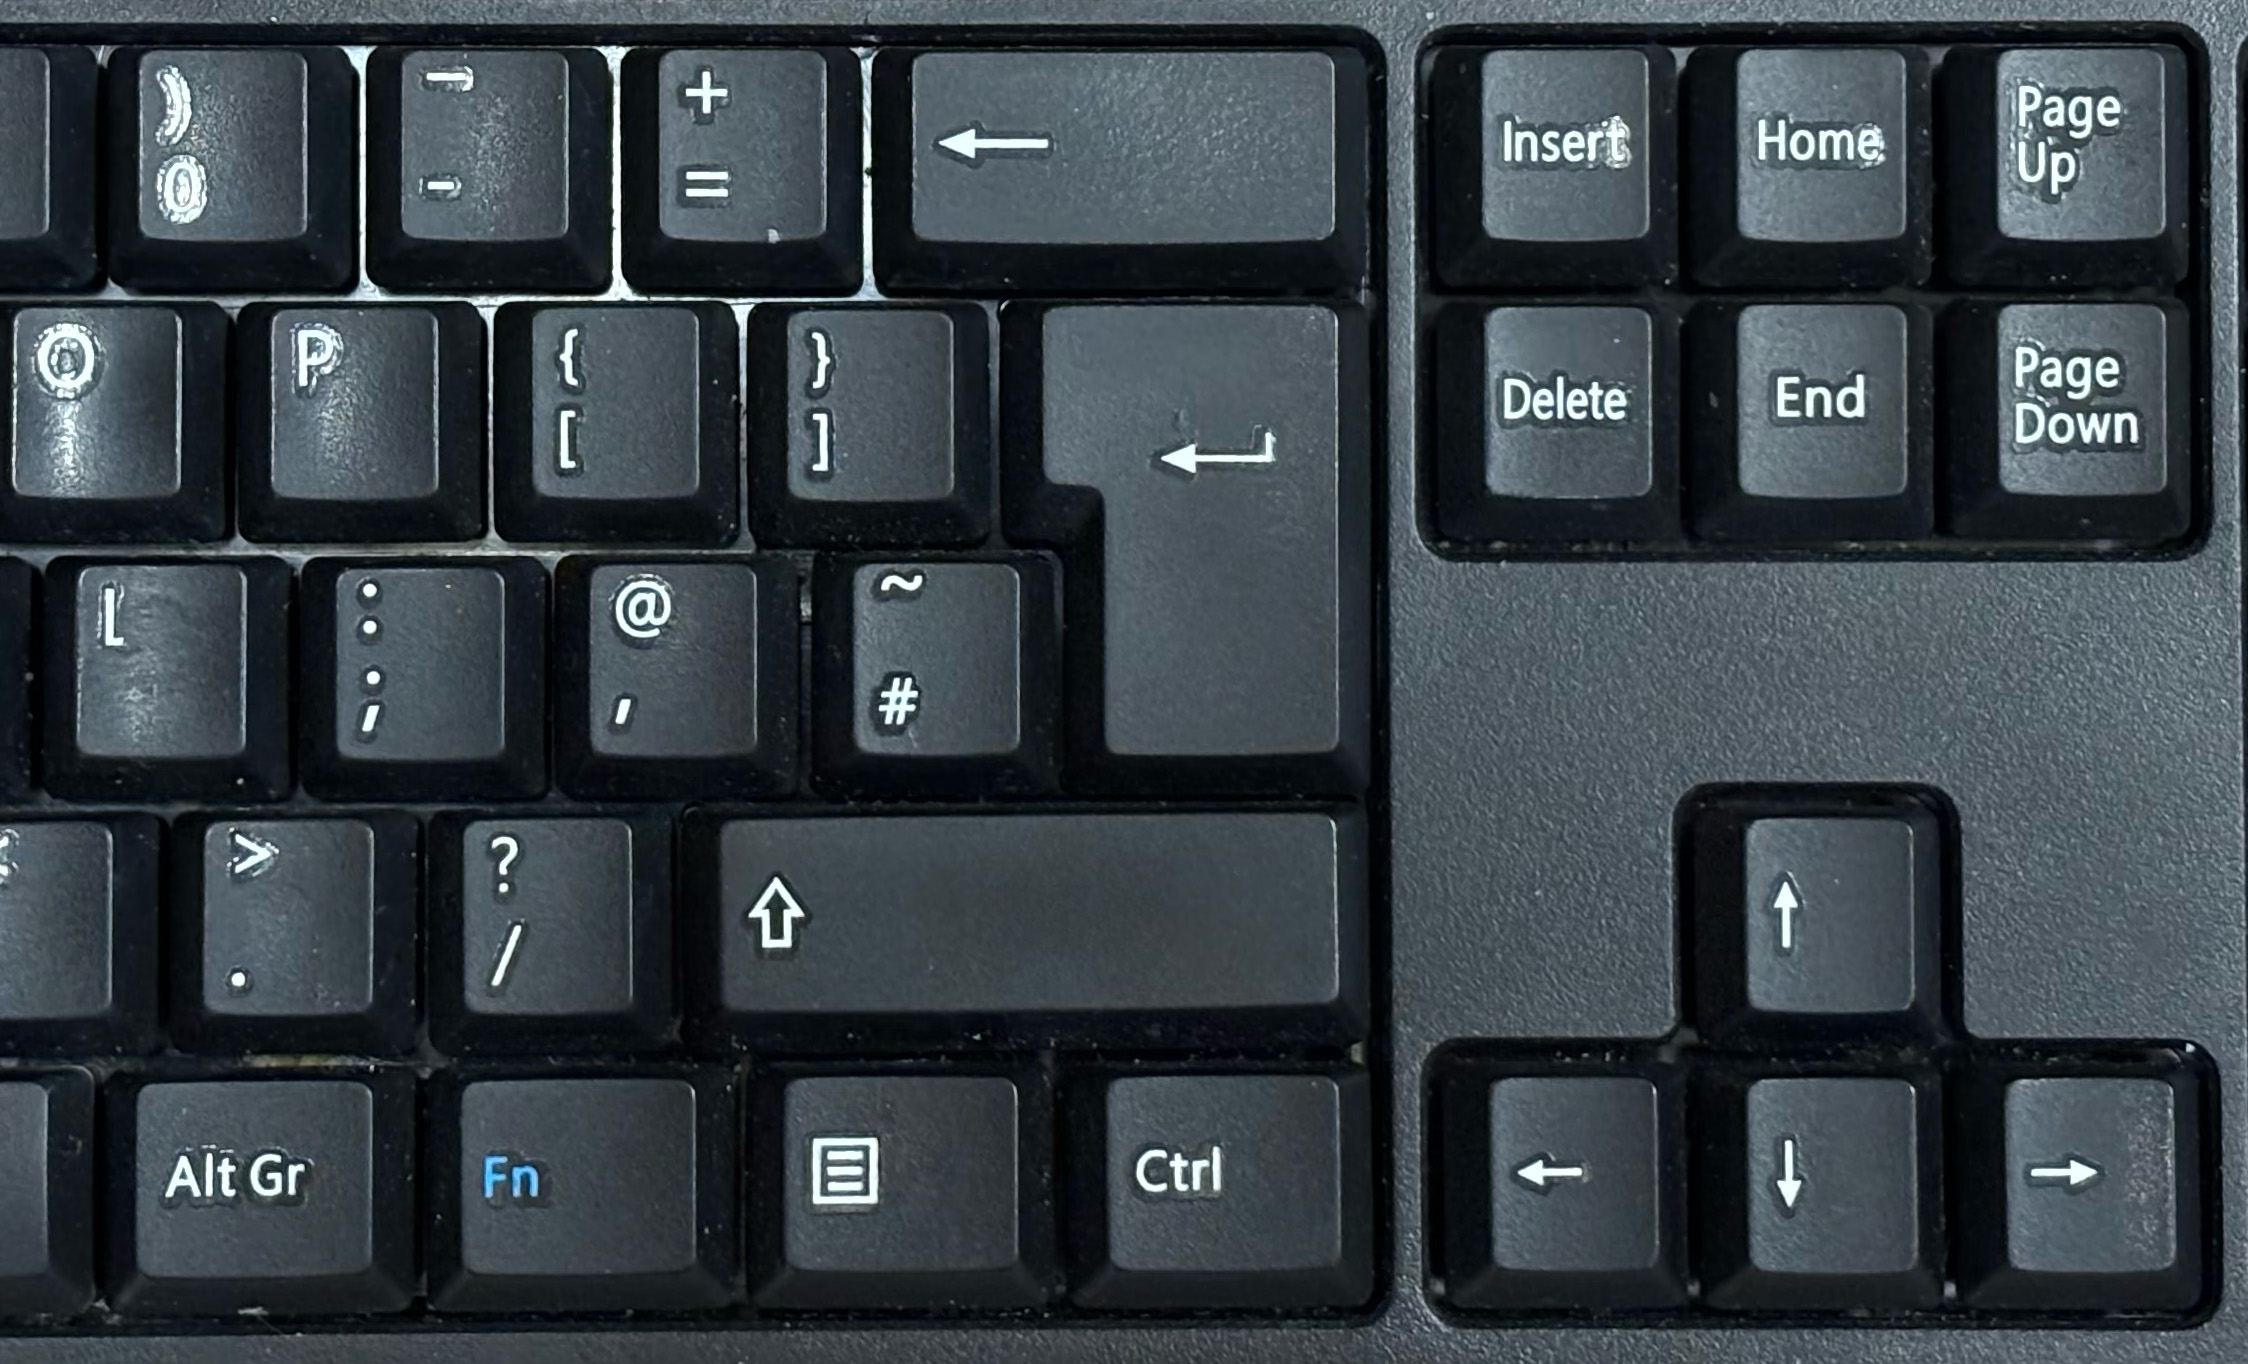 Pound key on UK PC keyboard layout